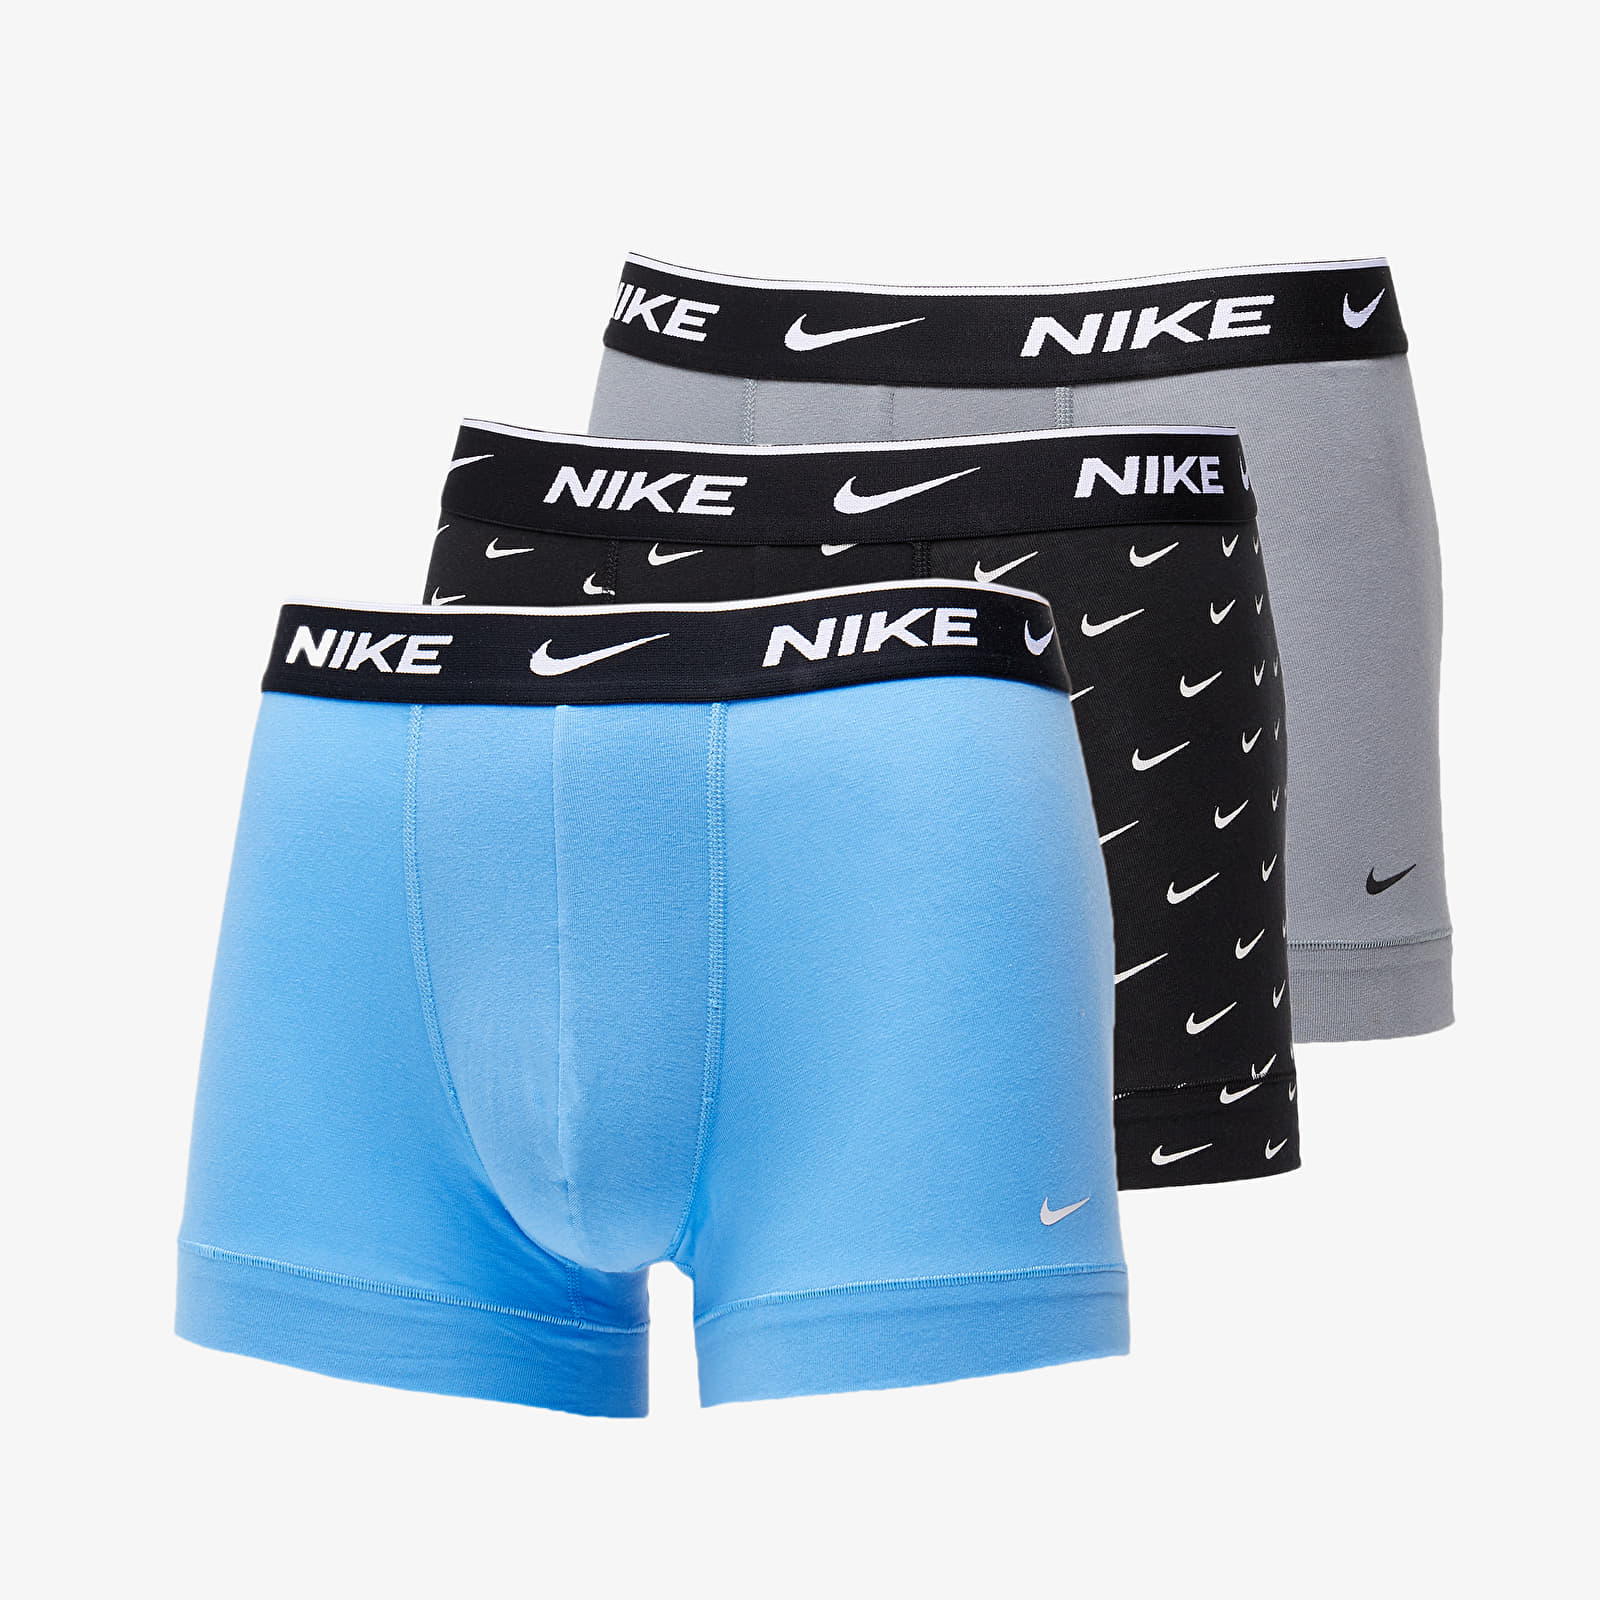 Boxer shorts Nike Dri-FIT Trunk 3-Pack Swoosh Print/ Grey/ University Blue